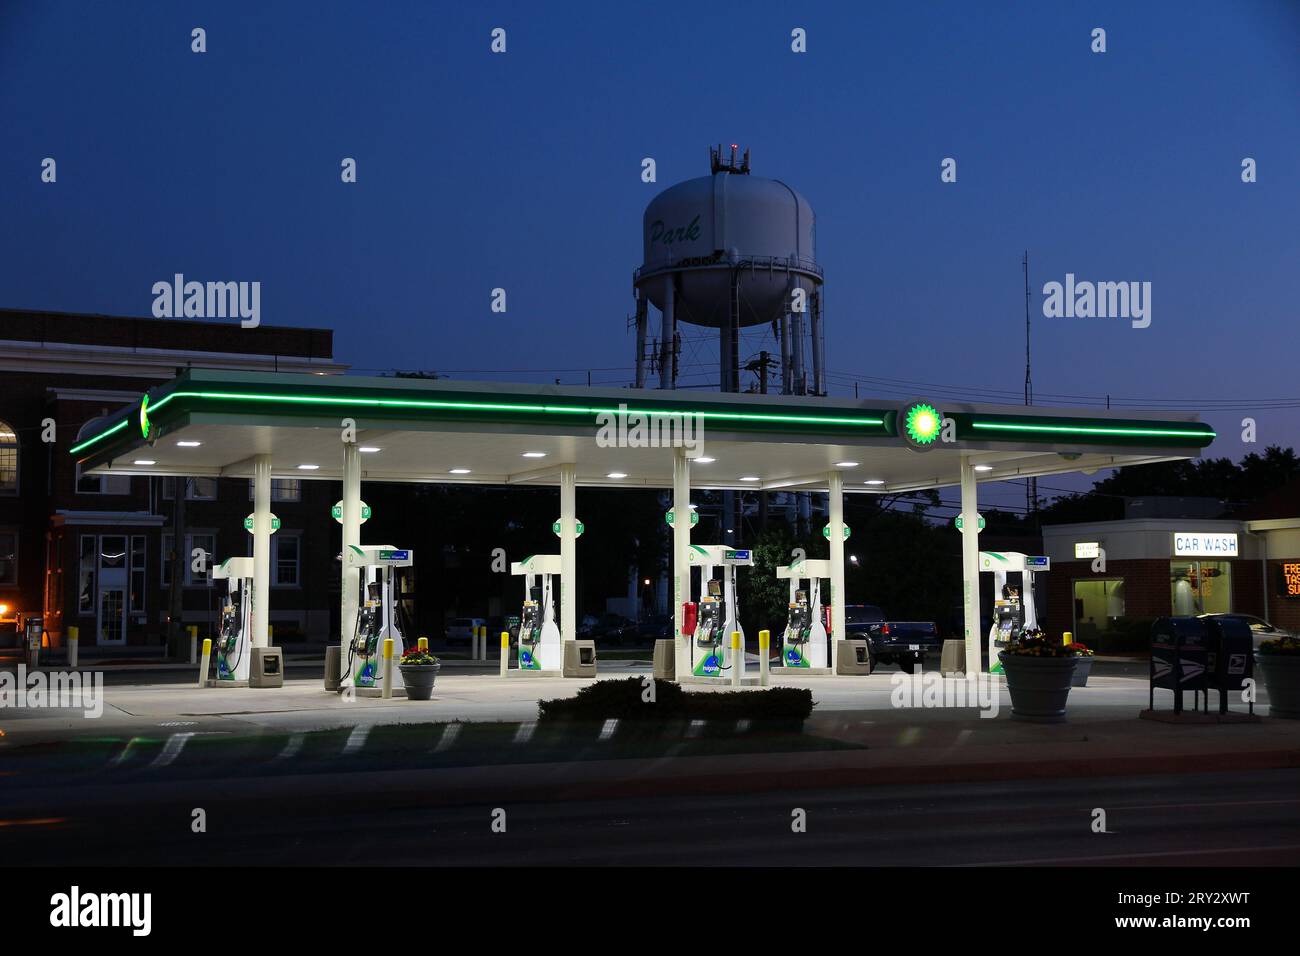 VILLA PARK, USA - 27 GIUGNO 2013: Vista serale della stazione di servizio BP a Villa Park, Illinois. Nel 2013 BP ha registrato un utile operativo di 31,3 miliardi di USD. Foto Stock